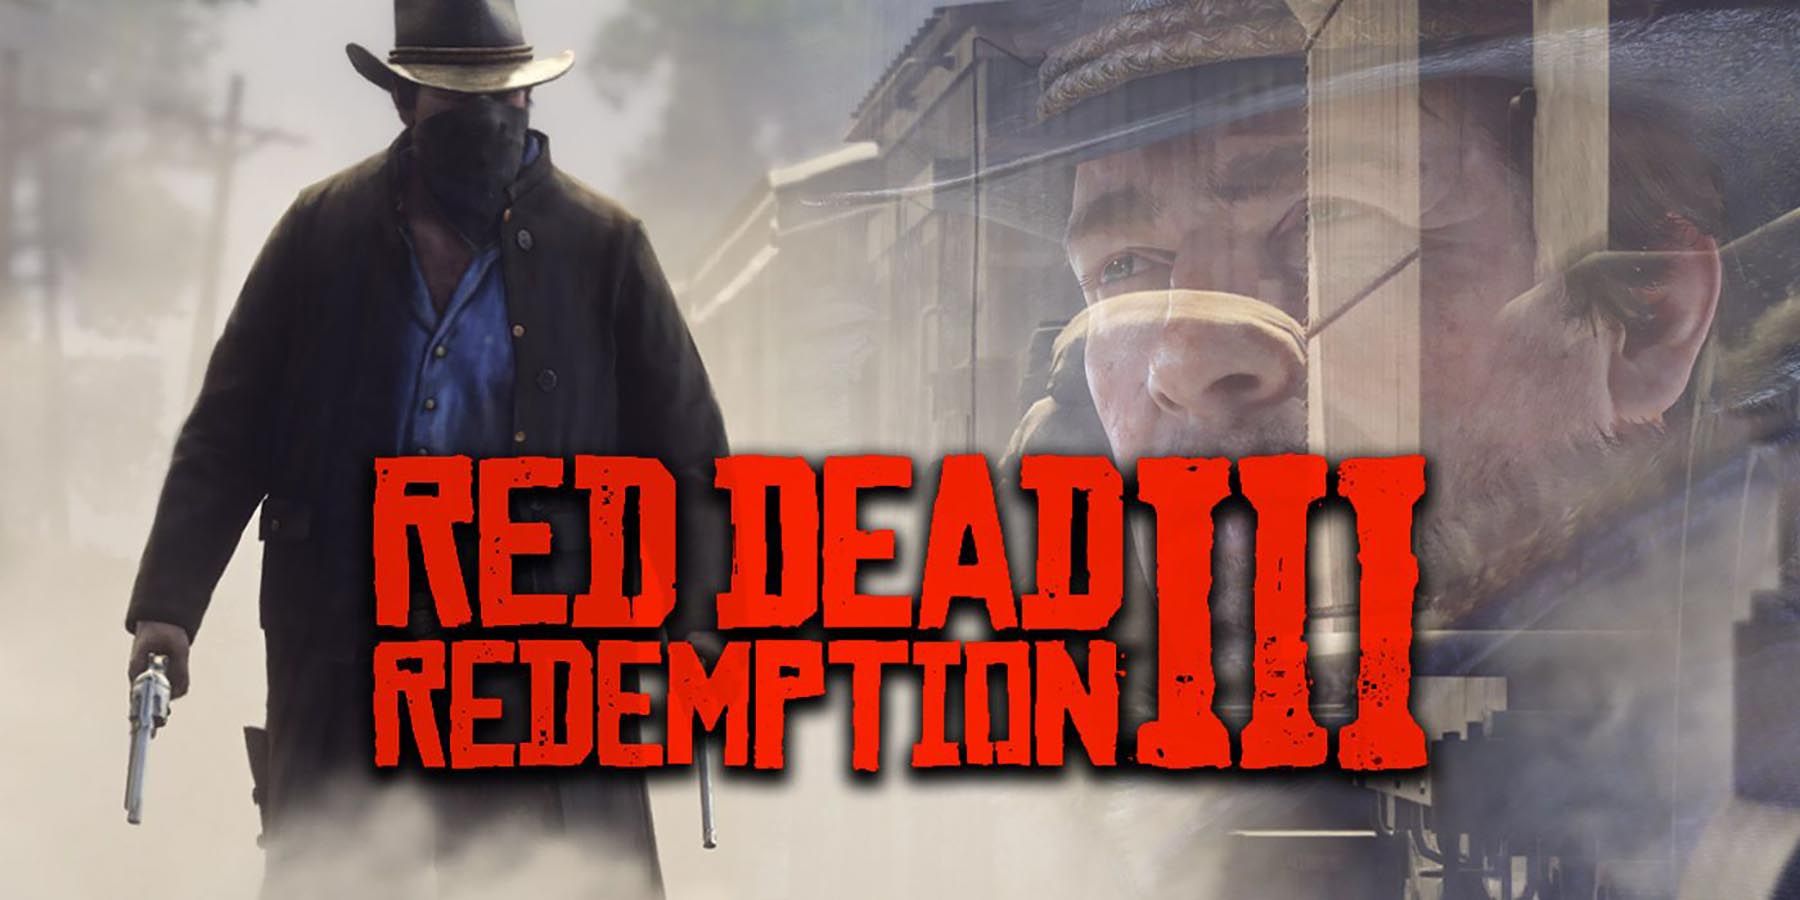 Red-Dead-Redemption-3-Arthur-Morgan